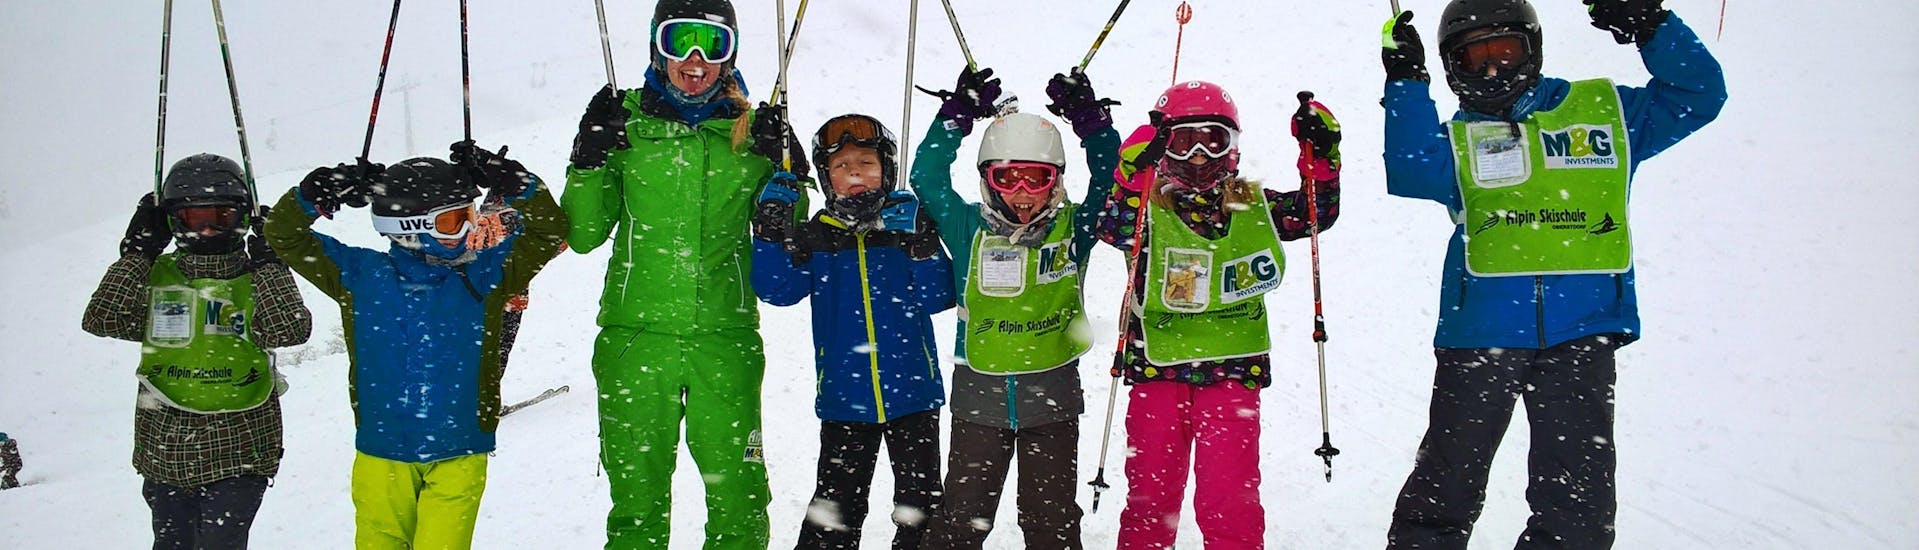 Les enfants s'amusent dans les cours de ski pour enfants (7-8 ans) - débutants organisés par l'Alpin Skischule Oberstdorf.